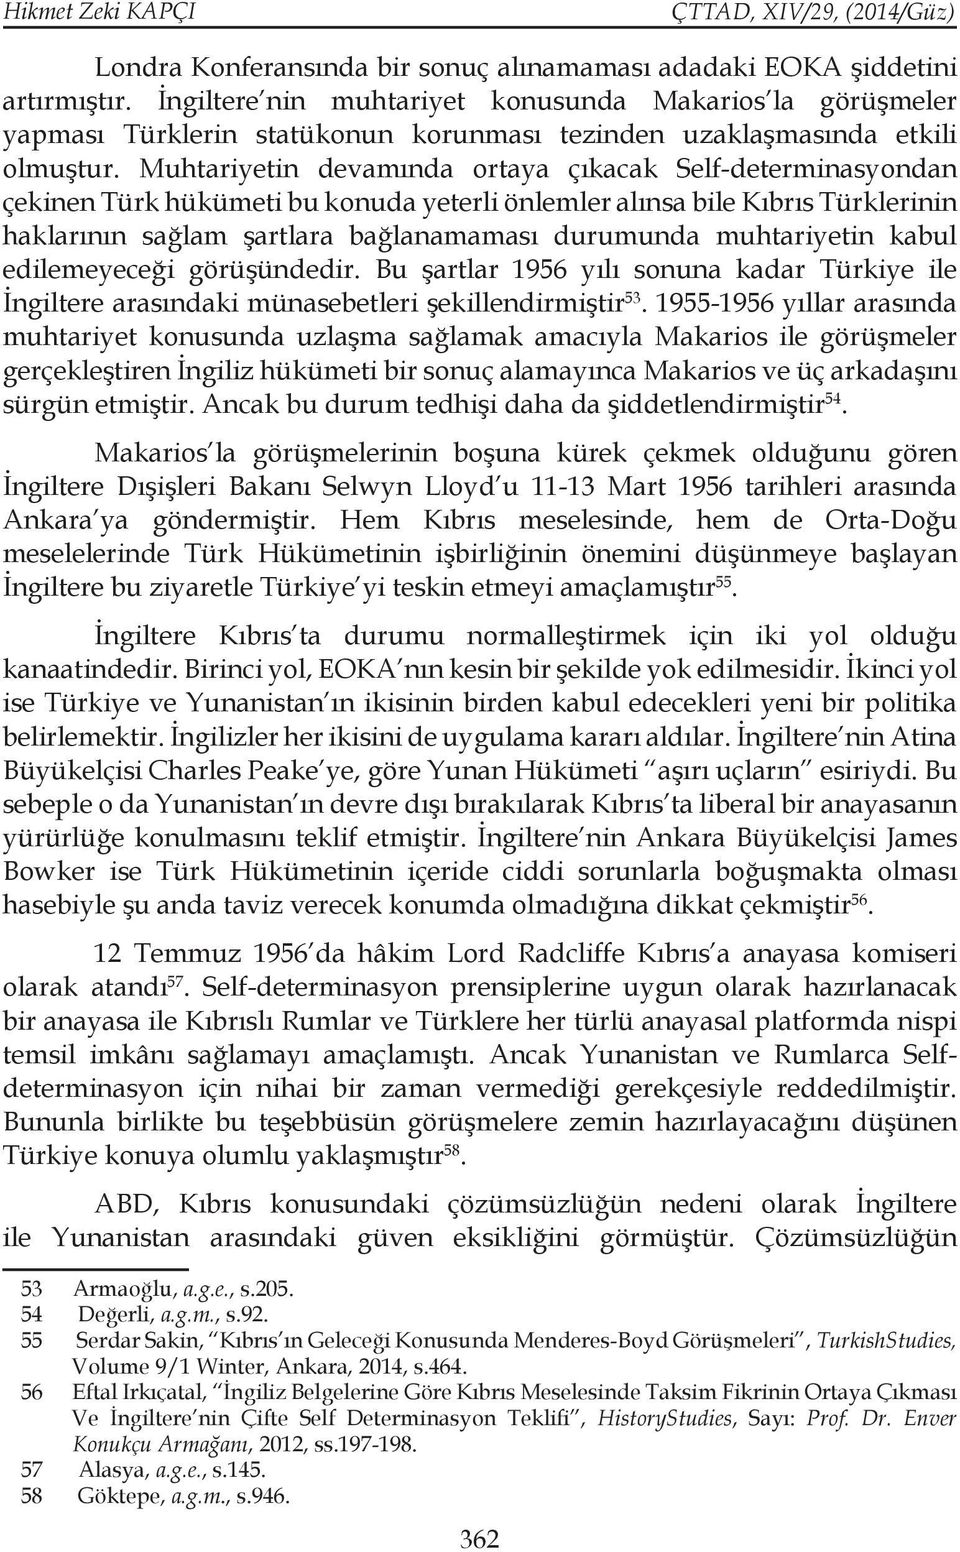 Muhtariyetin devamında ortaya çıkacak Self-determinasyondan çekinen Türk hükümeti bu konuda yeterli önlemler alınsa bile Kıbrıs Türklerinin haklarının sağlam şartlara bağlanamaması durumunda